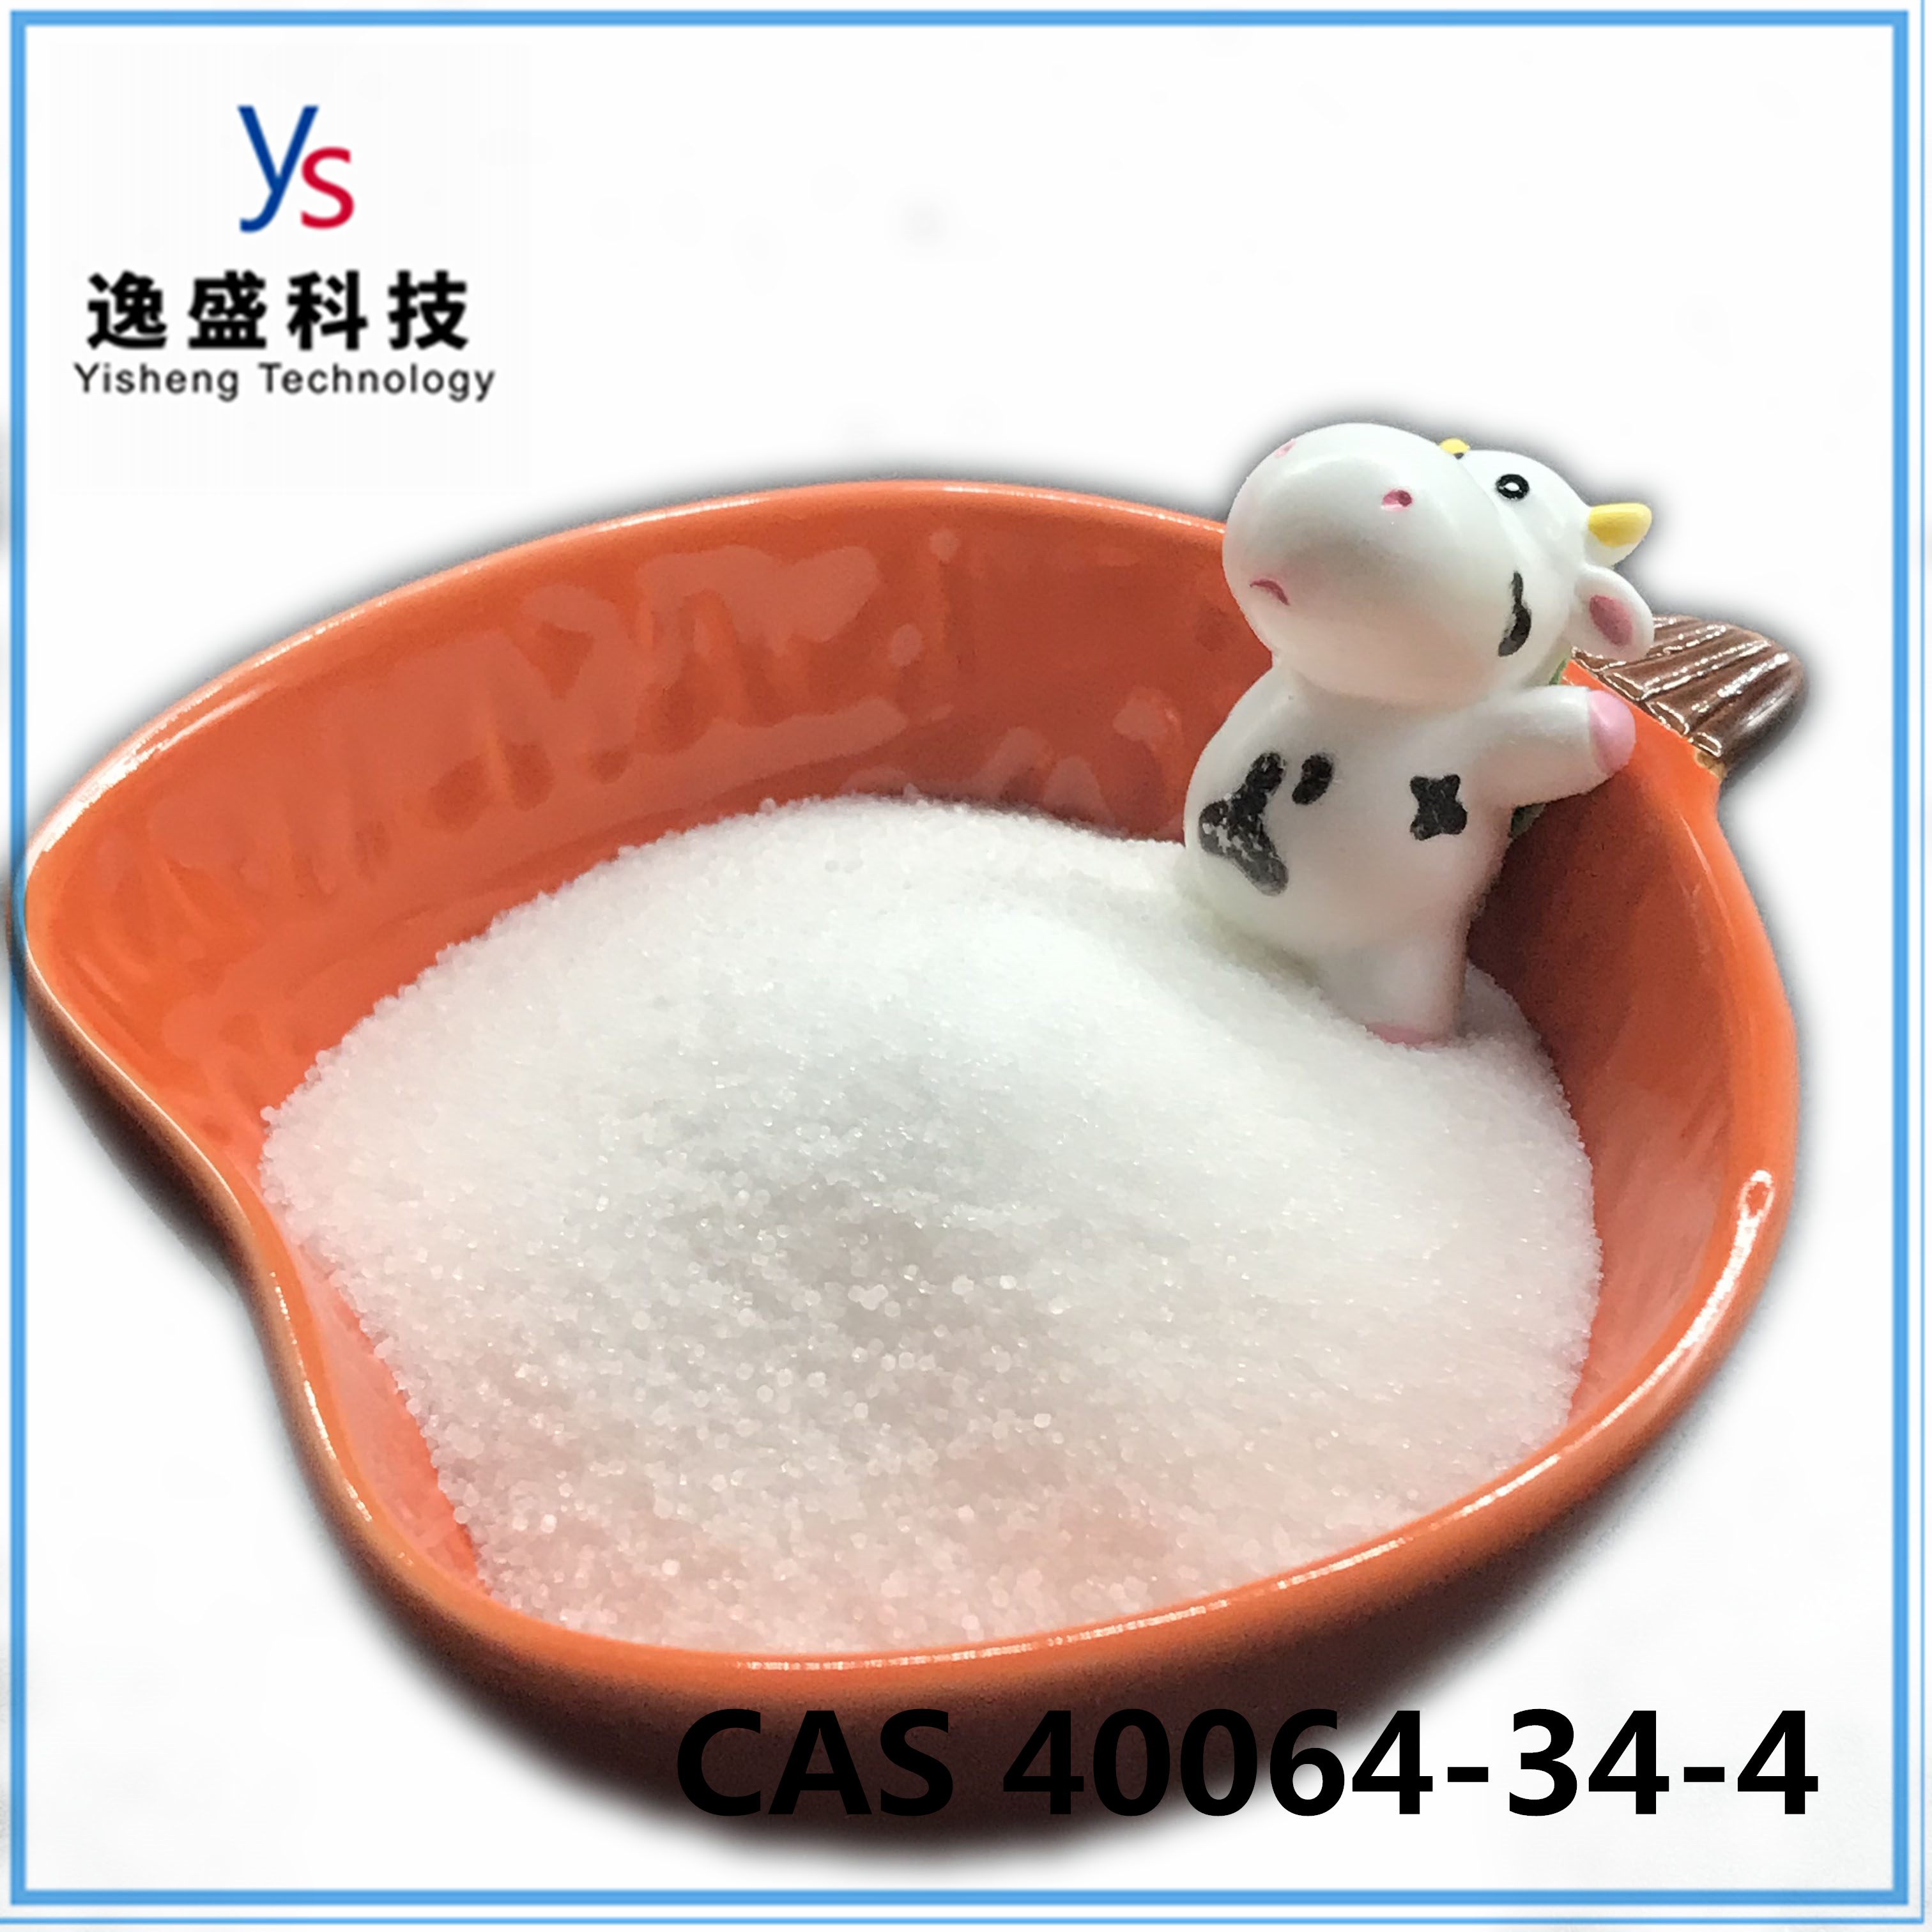 CAS 40064-34-4 Blanco de salud de alta pureza 